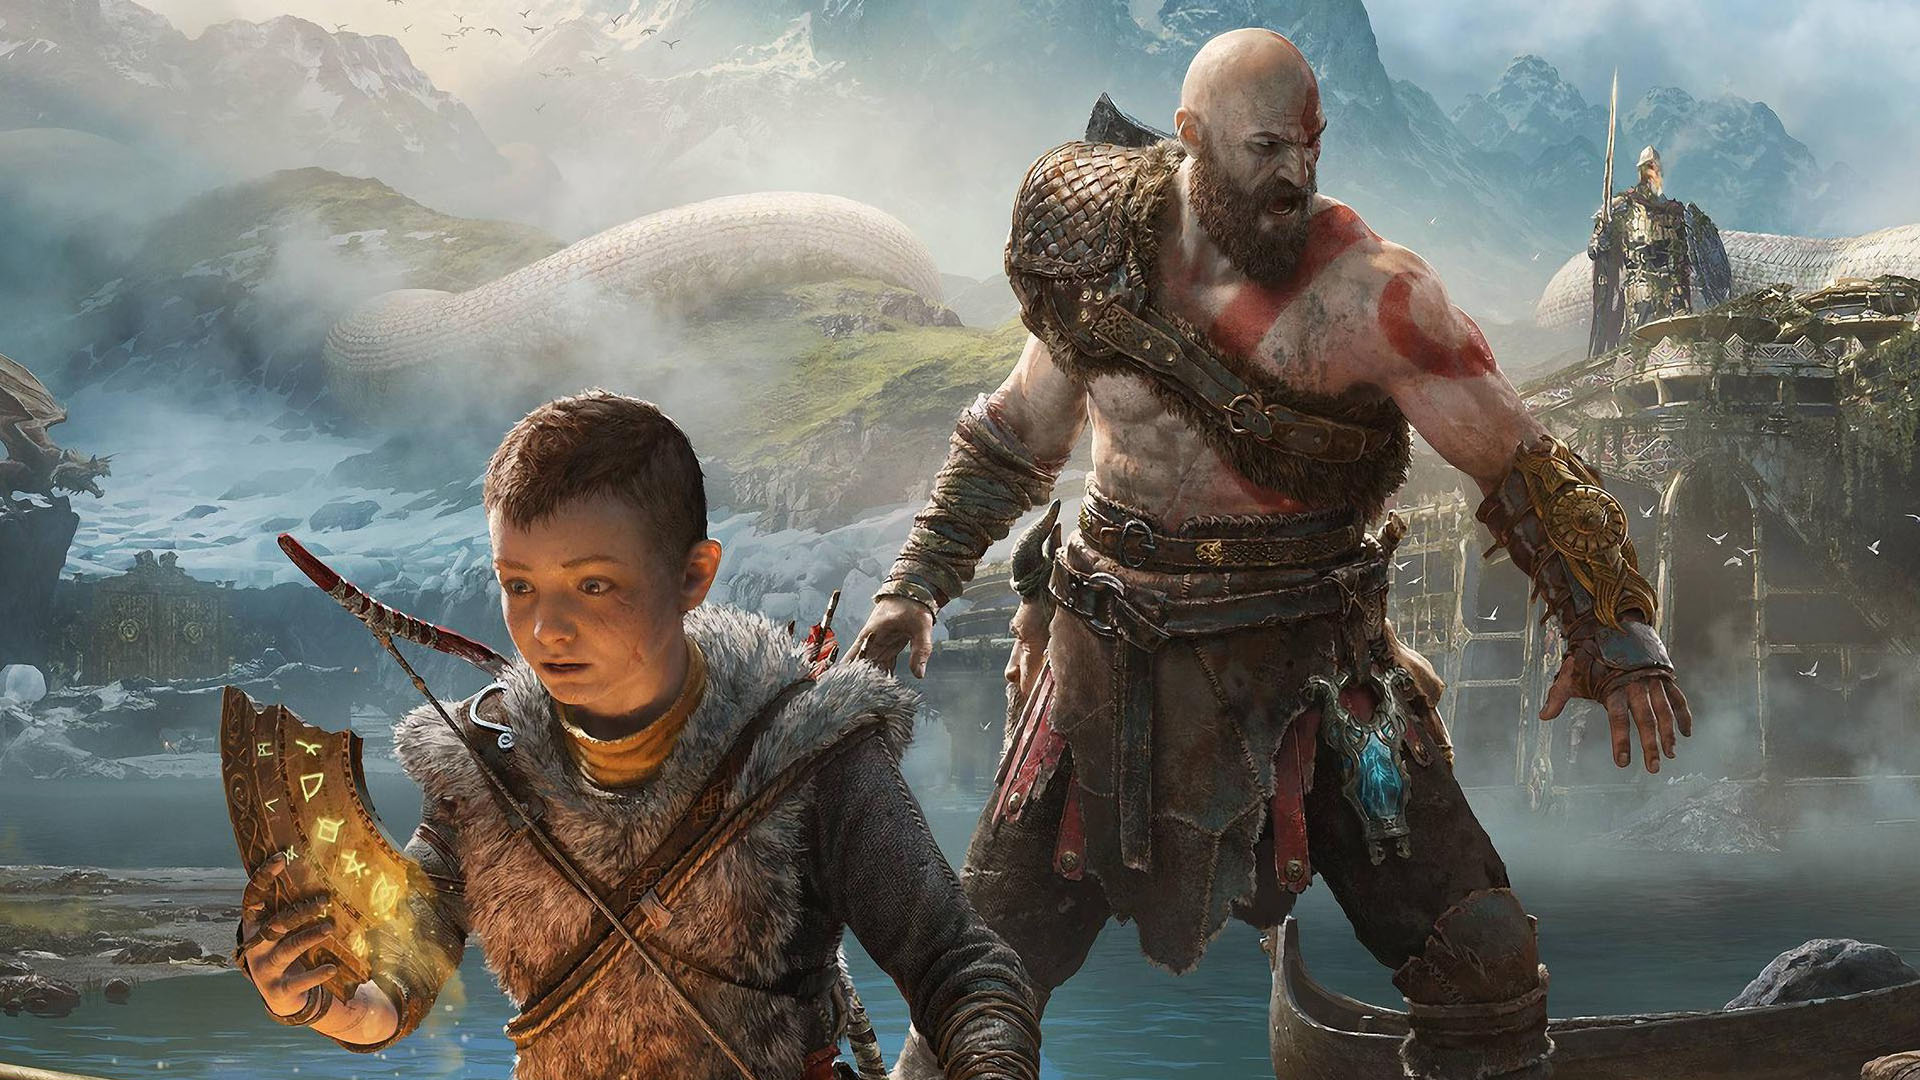 God of War Ragnarök: Valhalla DLC revealed, coming December 12 –  PlayStation.Blog